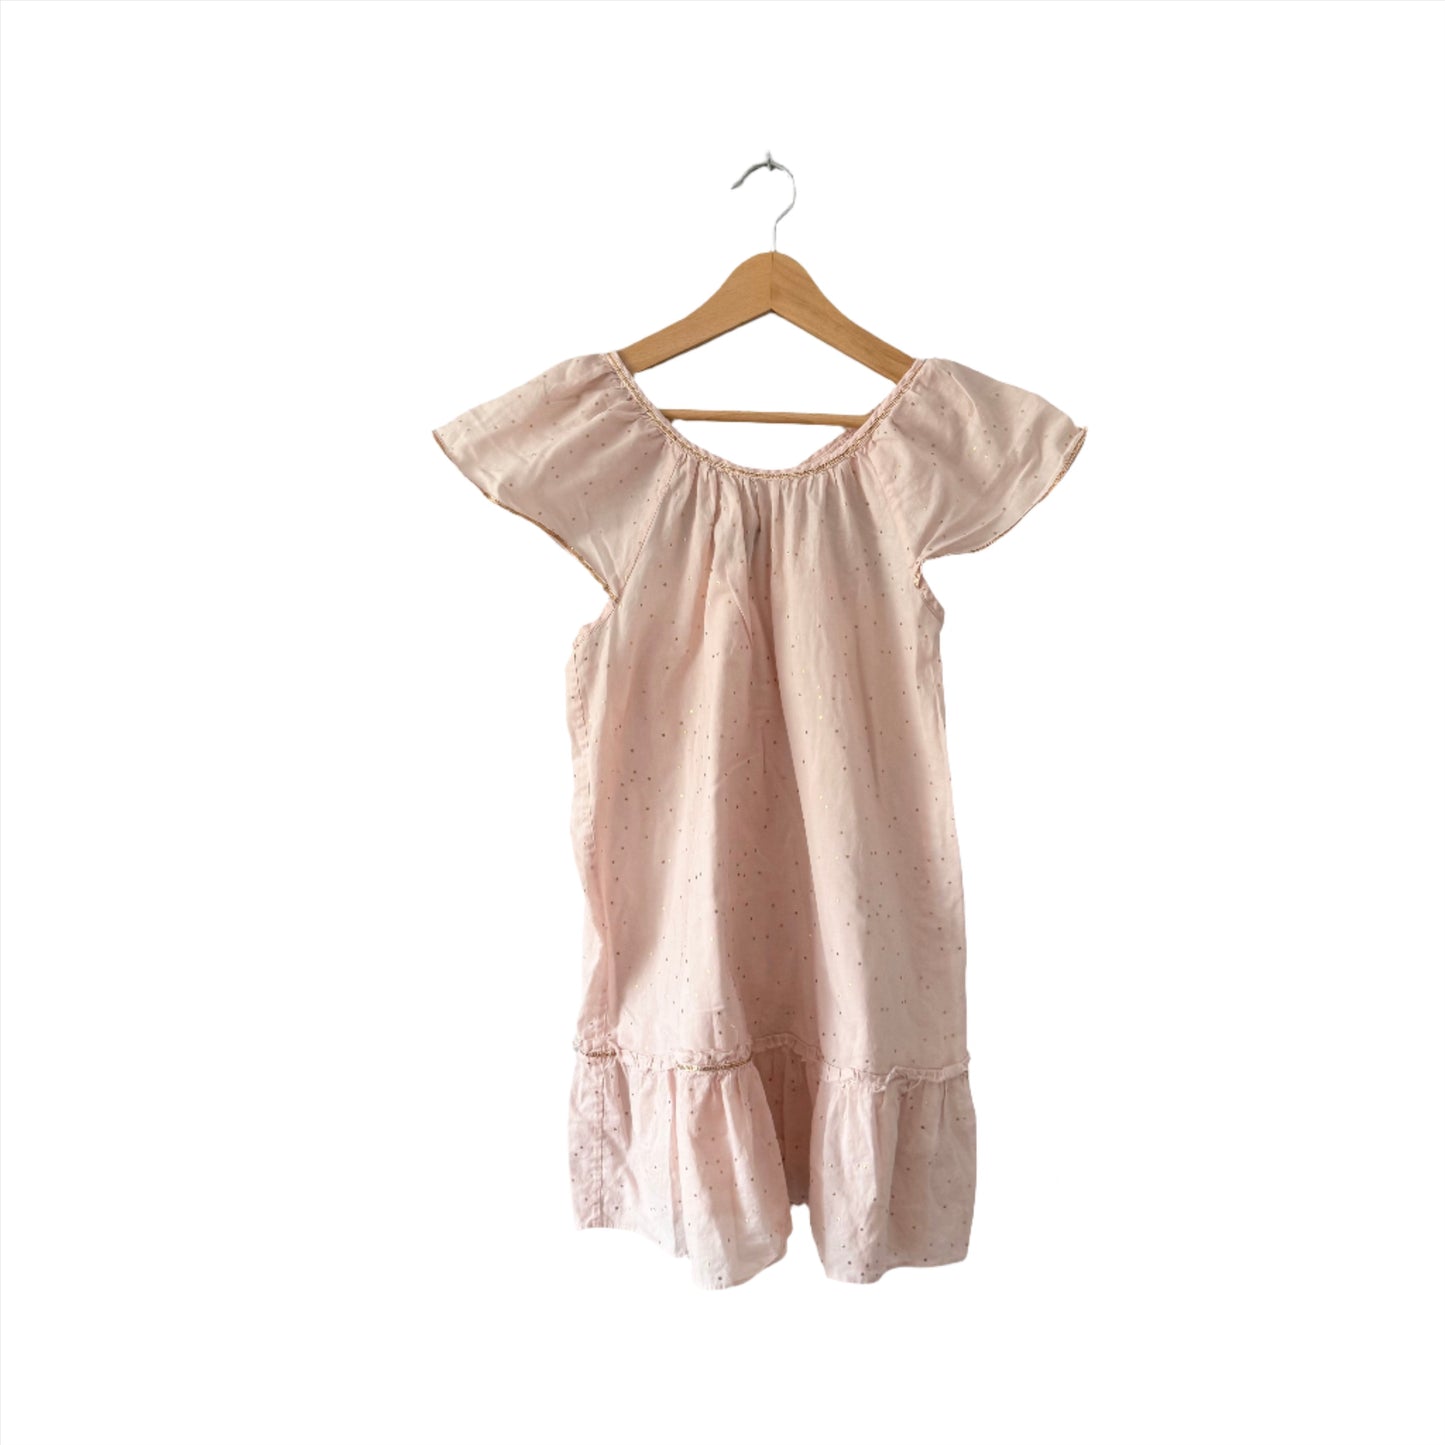 Velveteen / Light pink blouse tank dress / 8Y